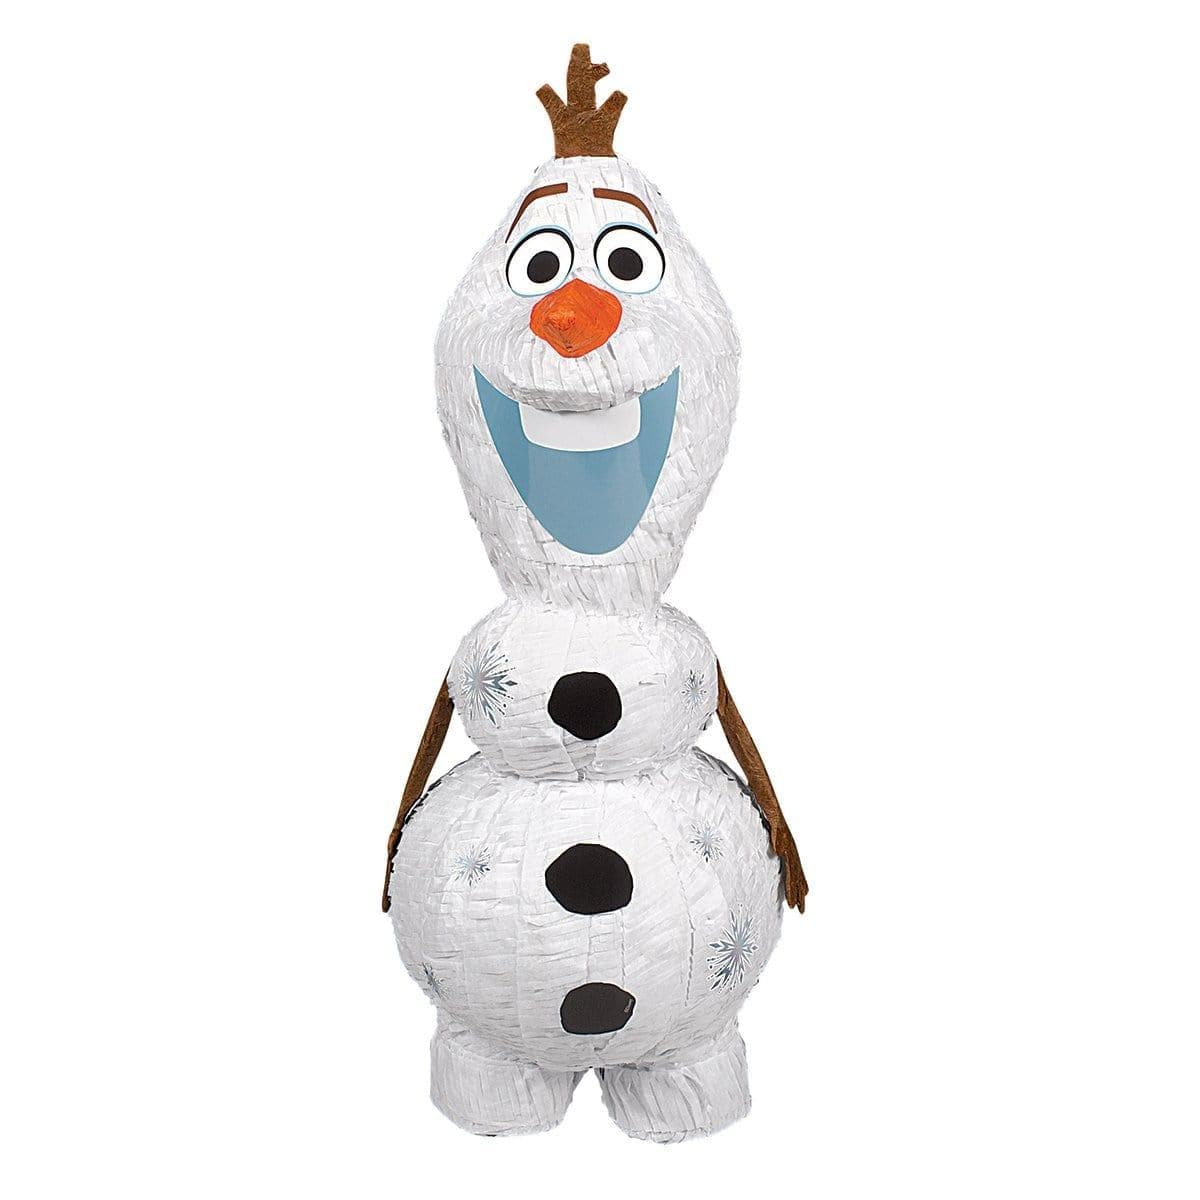 Buy Pinatas Frozen 2 Olaf pinata sold at Party Expert